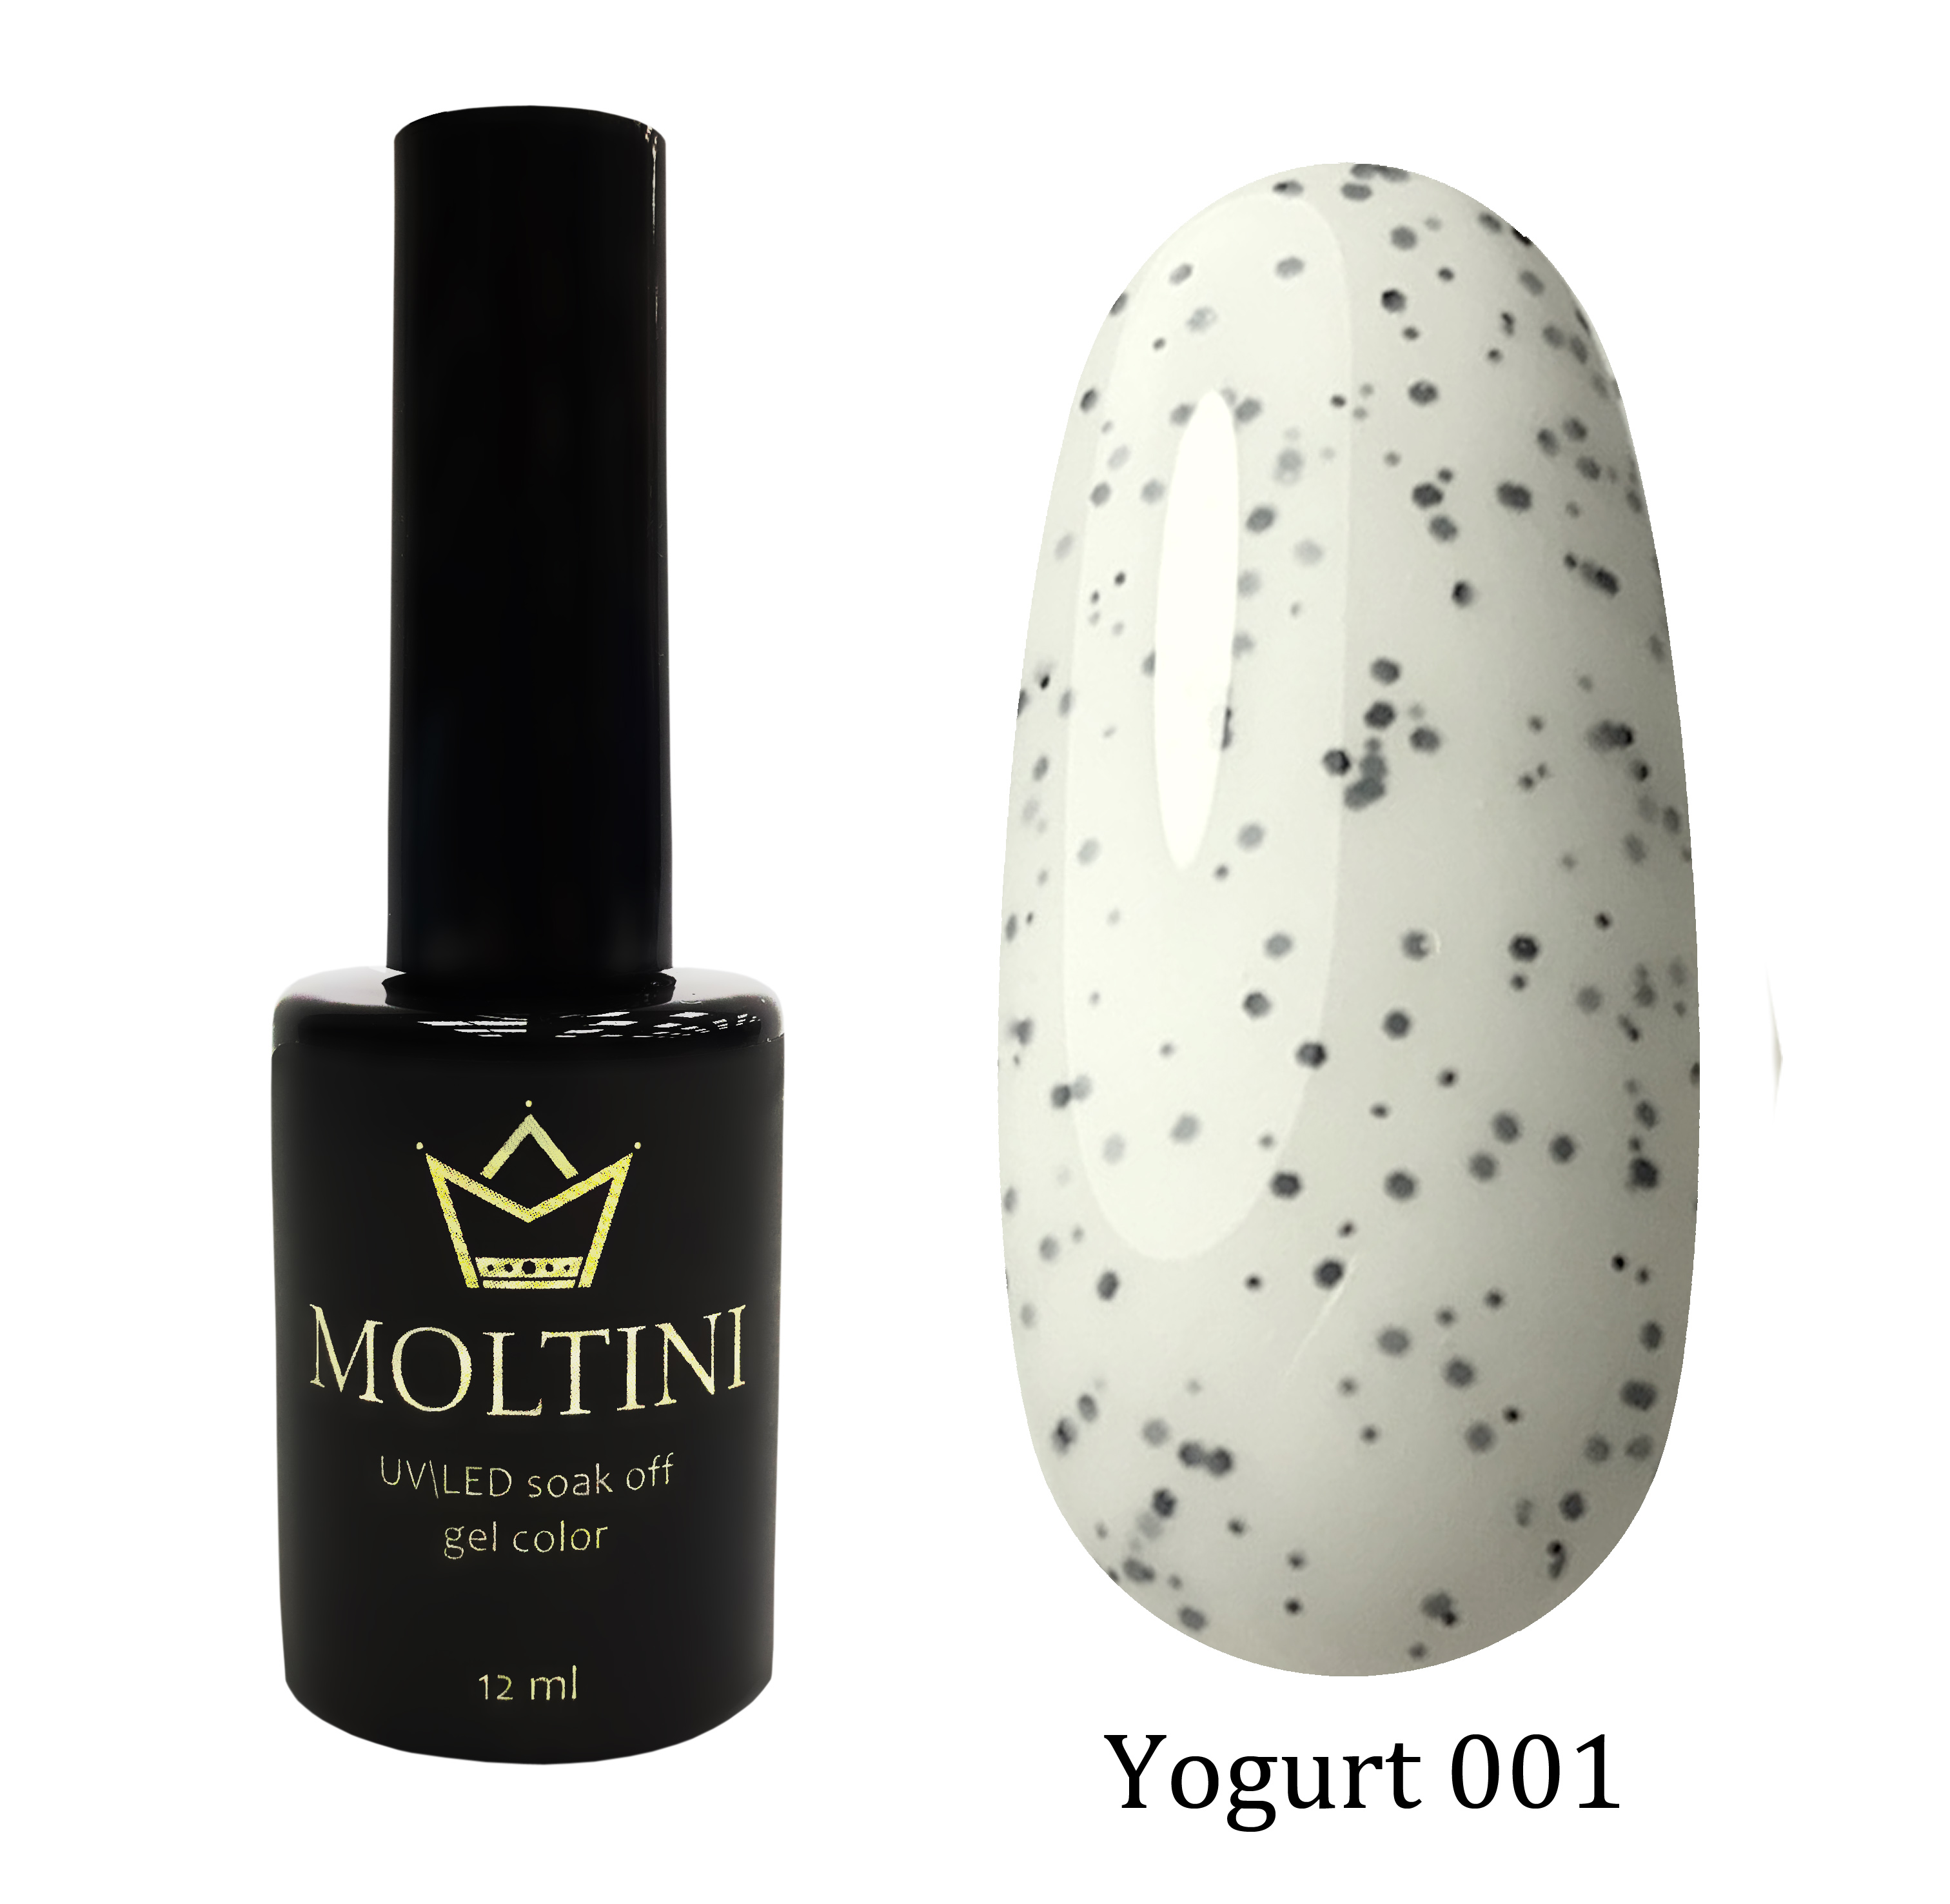 Moltini цветной гель-лак Yogurt 001, 12 мл